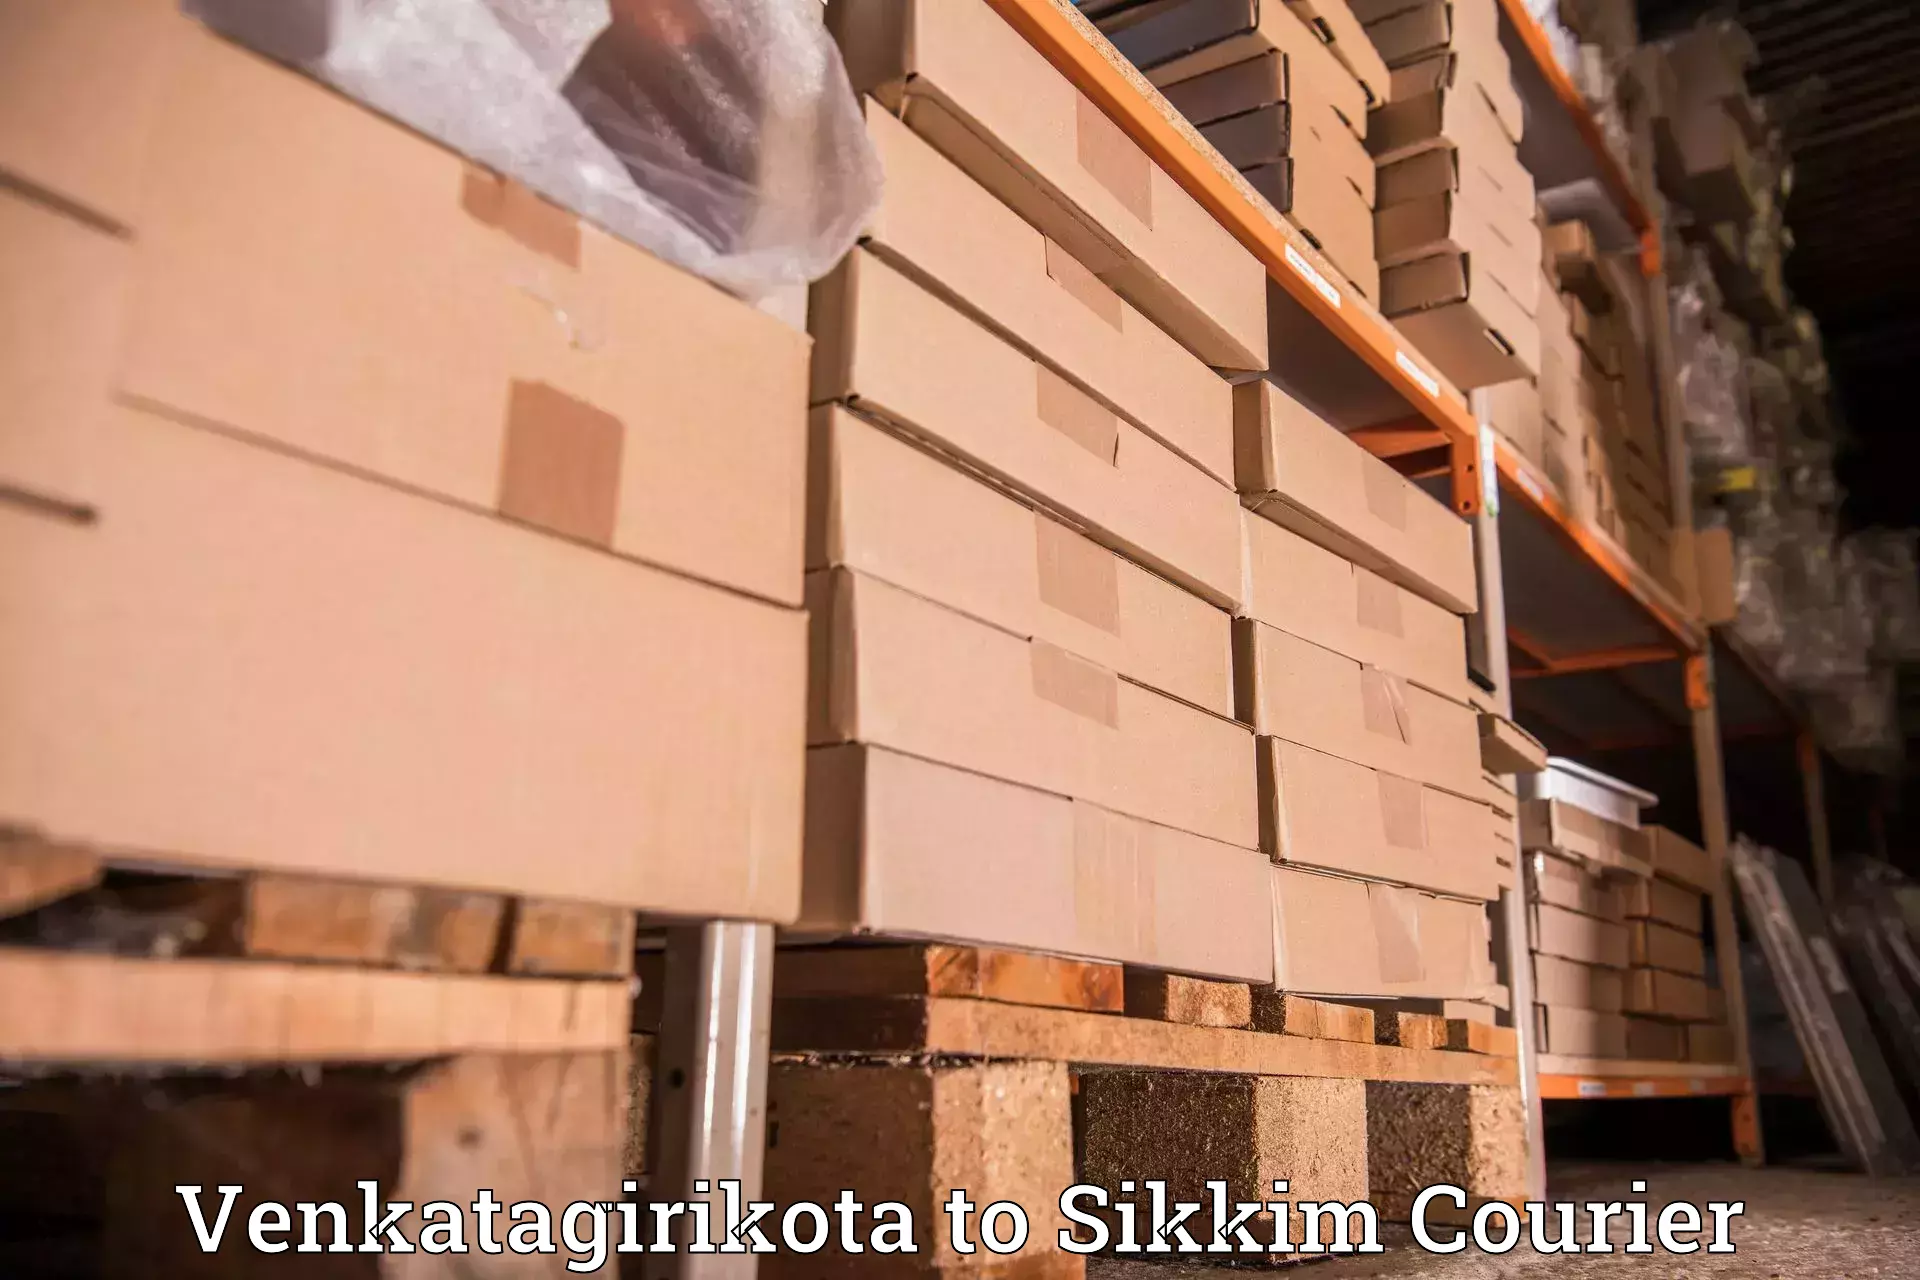 Reliable courier services Venkatagirikota to Ravangla